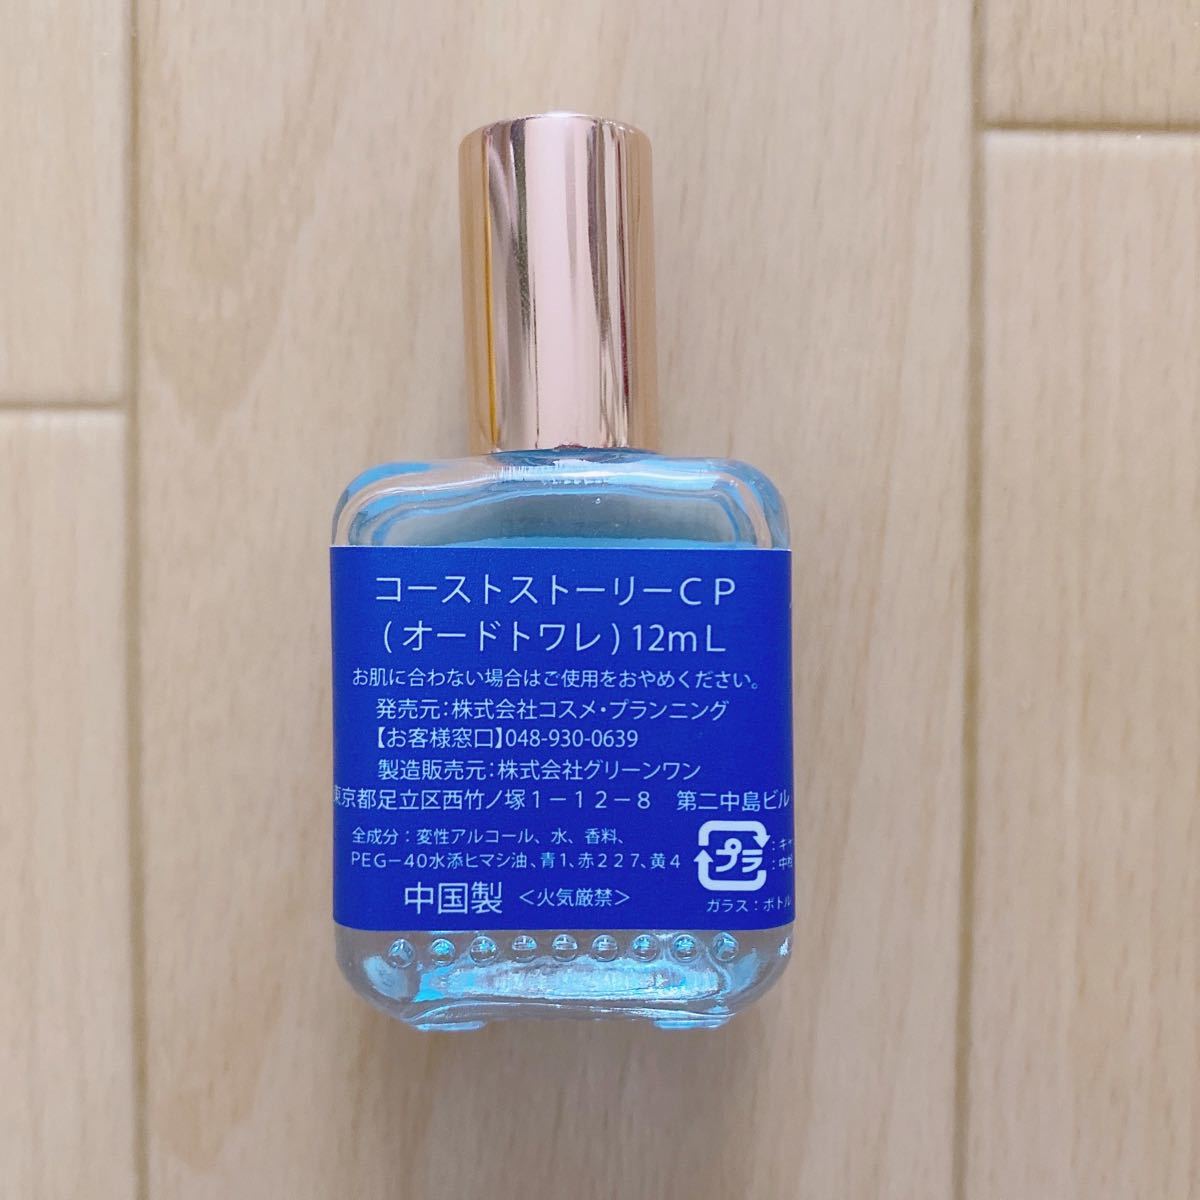 【シーピーパルファムズ】香水 オードトワレ ミニボトル 12ml